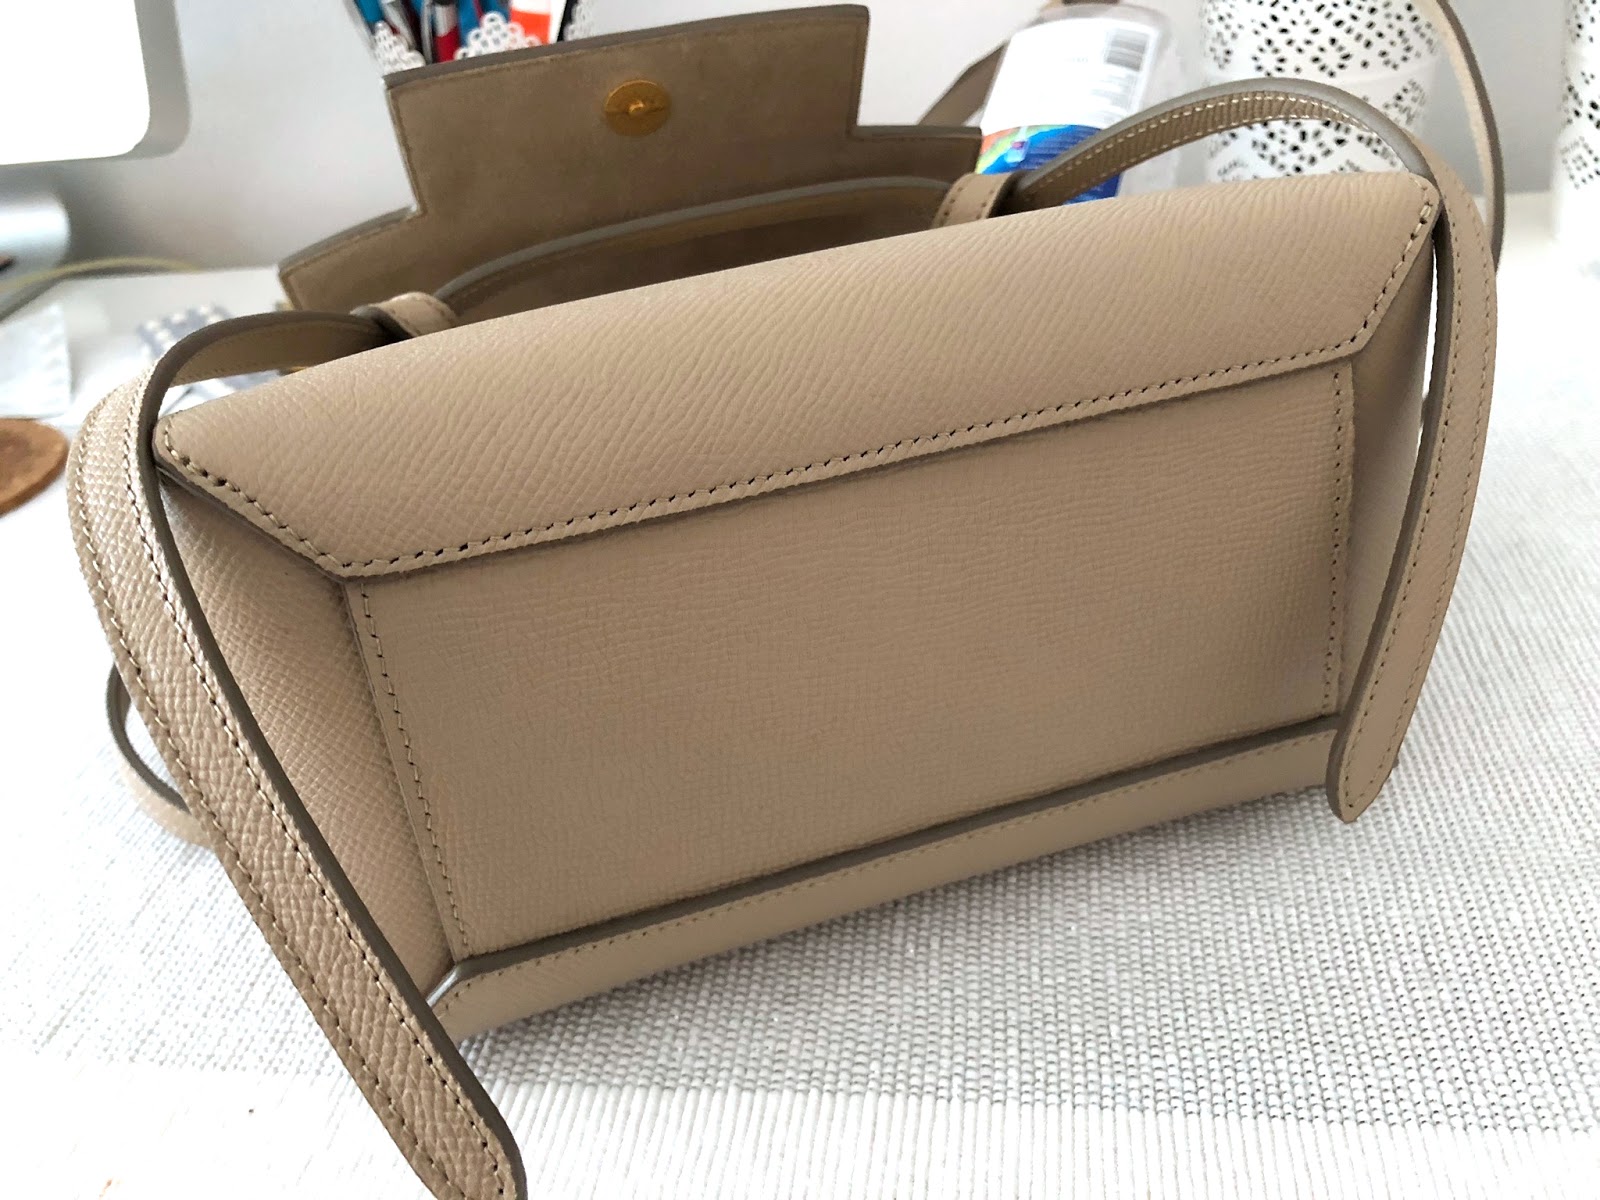 CELINE UNBOXING - Celine Belt Bag First Impression + What fits inside